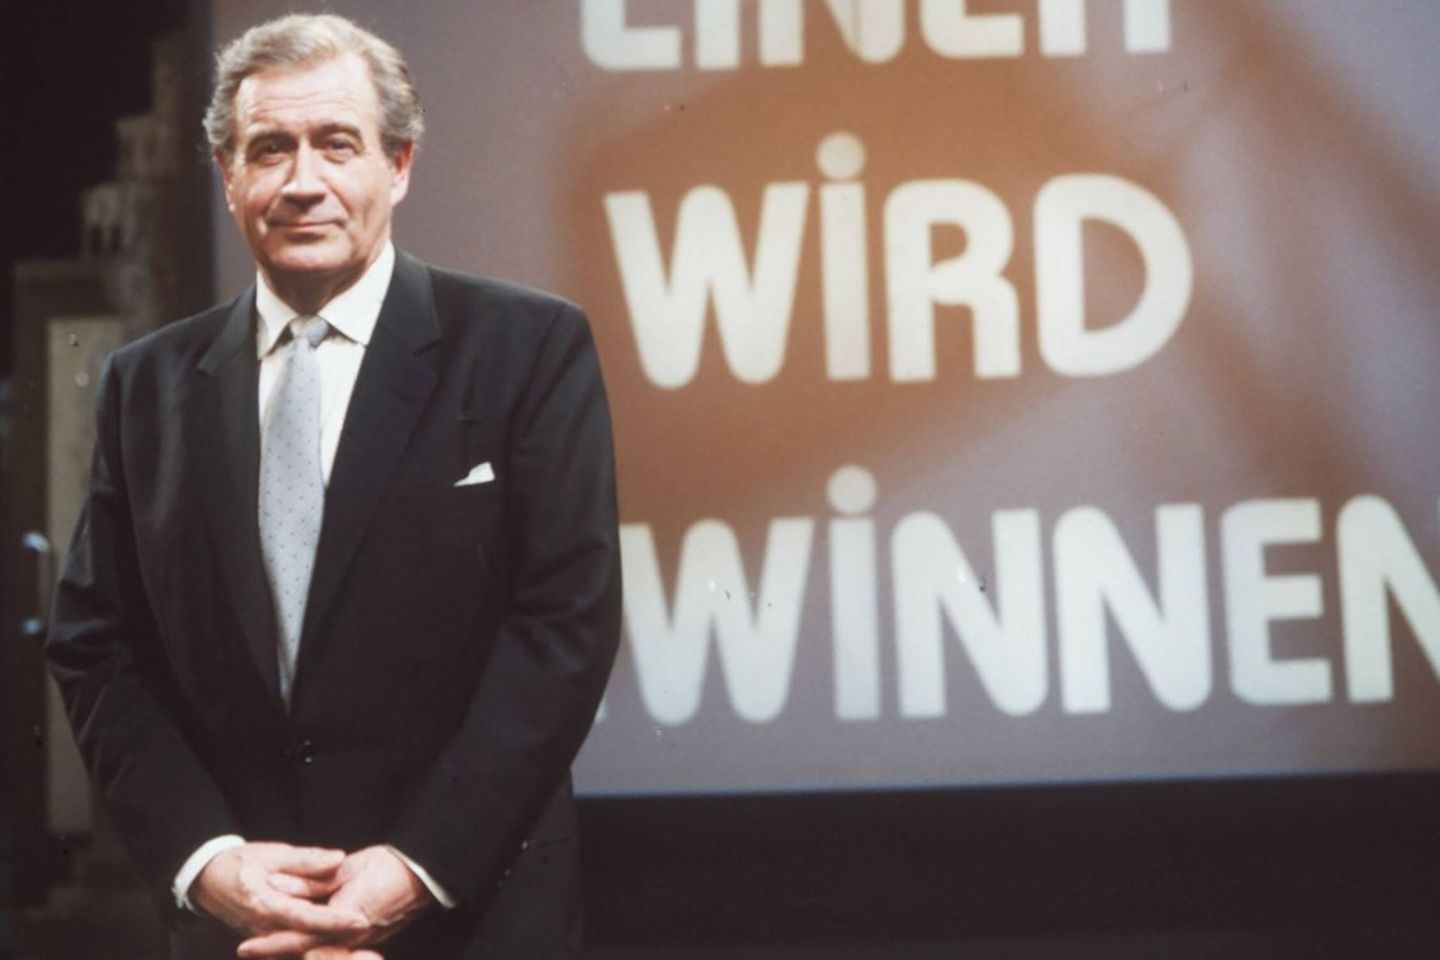 Mit der Quiz-Sendung "Einer wird gewinnen" schrieb Hans-Joachim Kulenkampff Fernsehgeschichte.